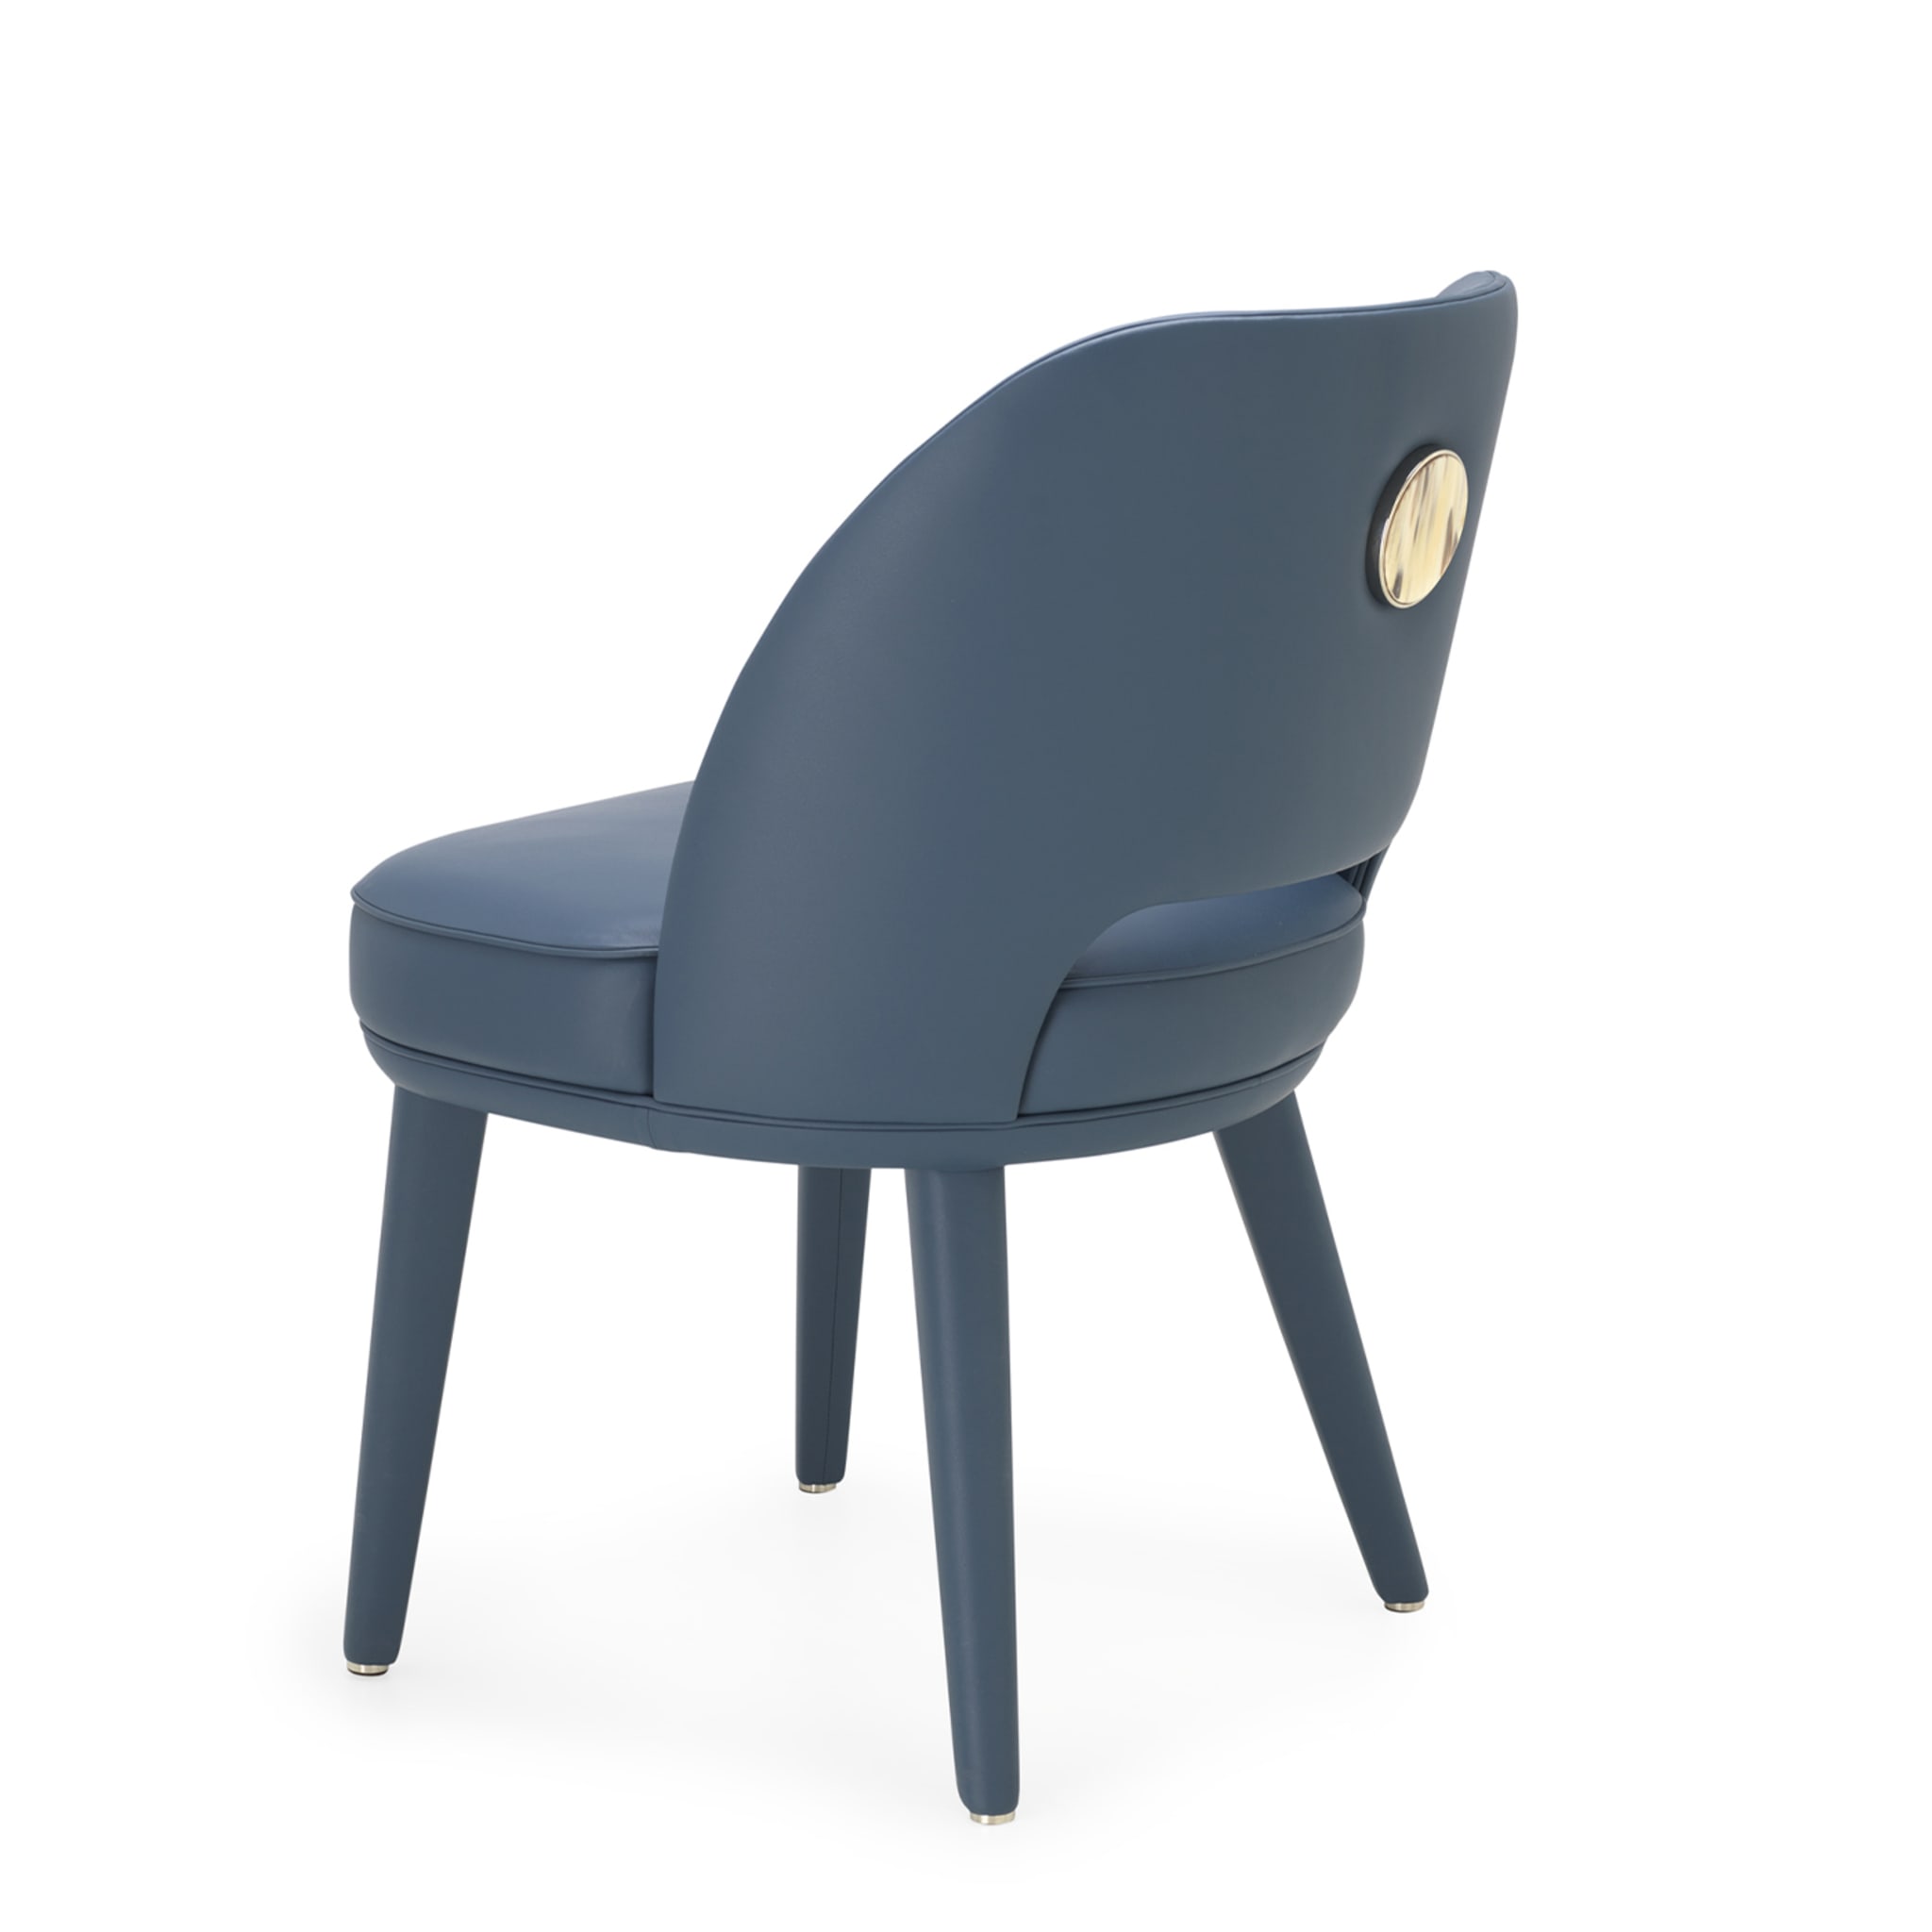 PENELOPE blauer Stuhl - Alternative Ansicht 2